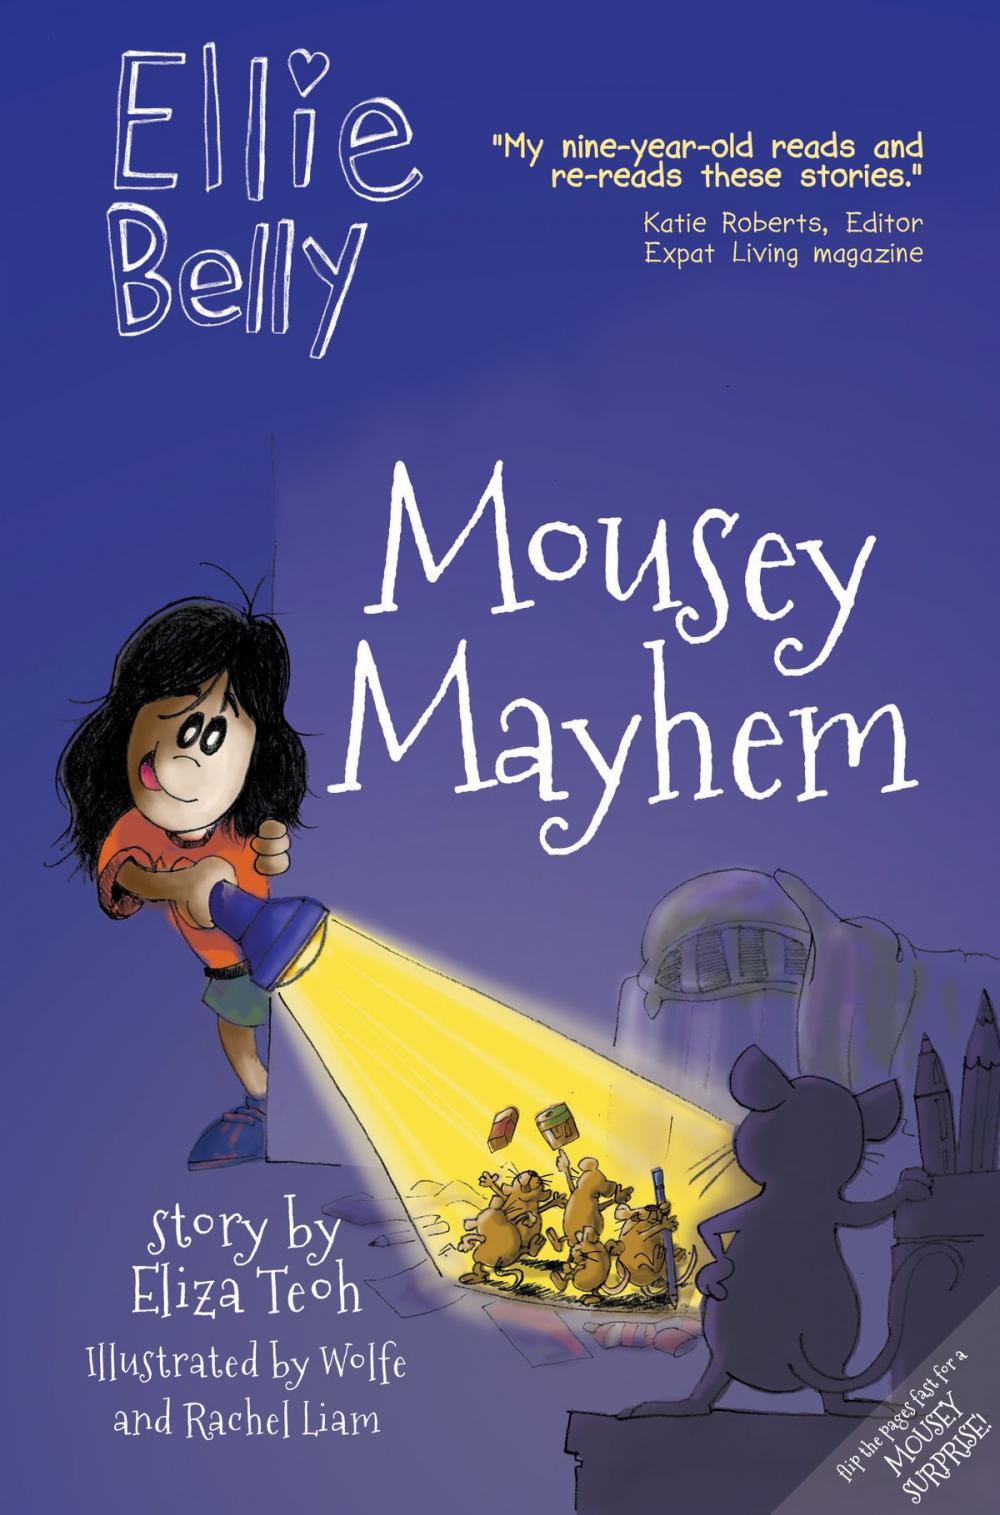 Big bigCover of Ellie Belly: Mousey Mayhem